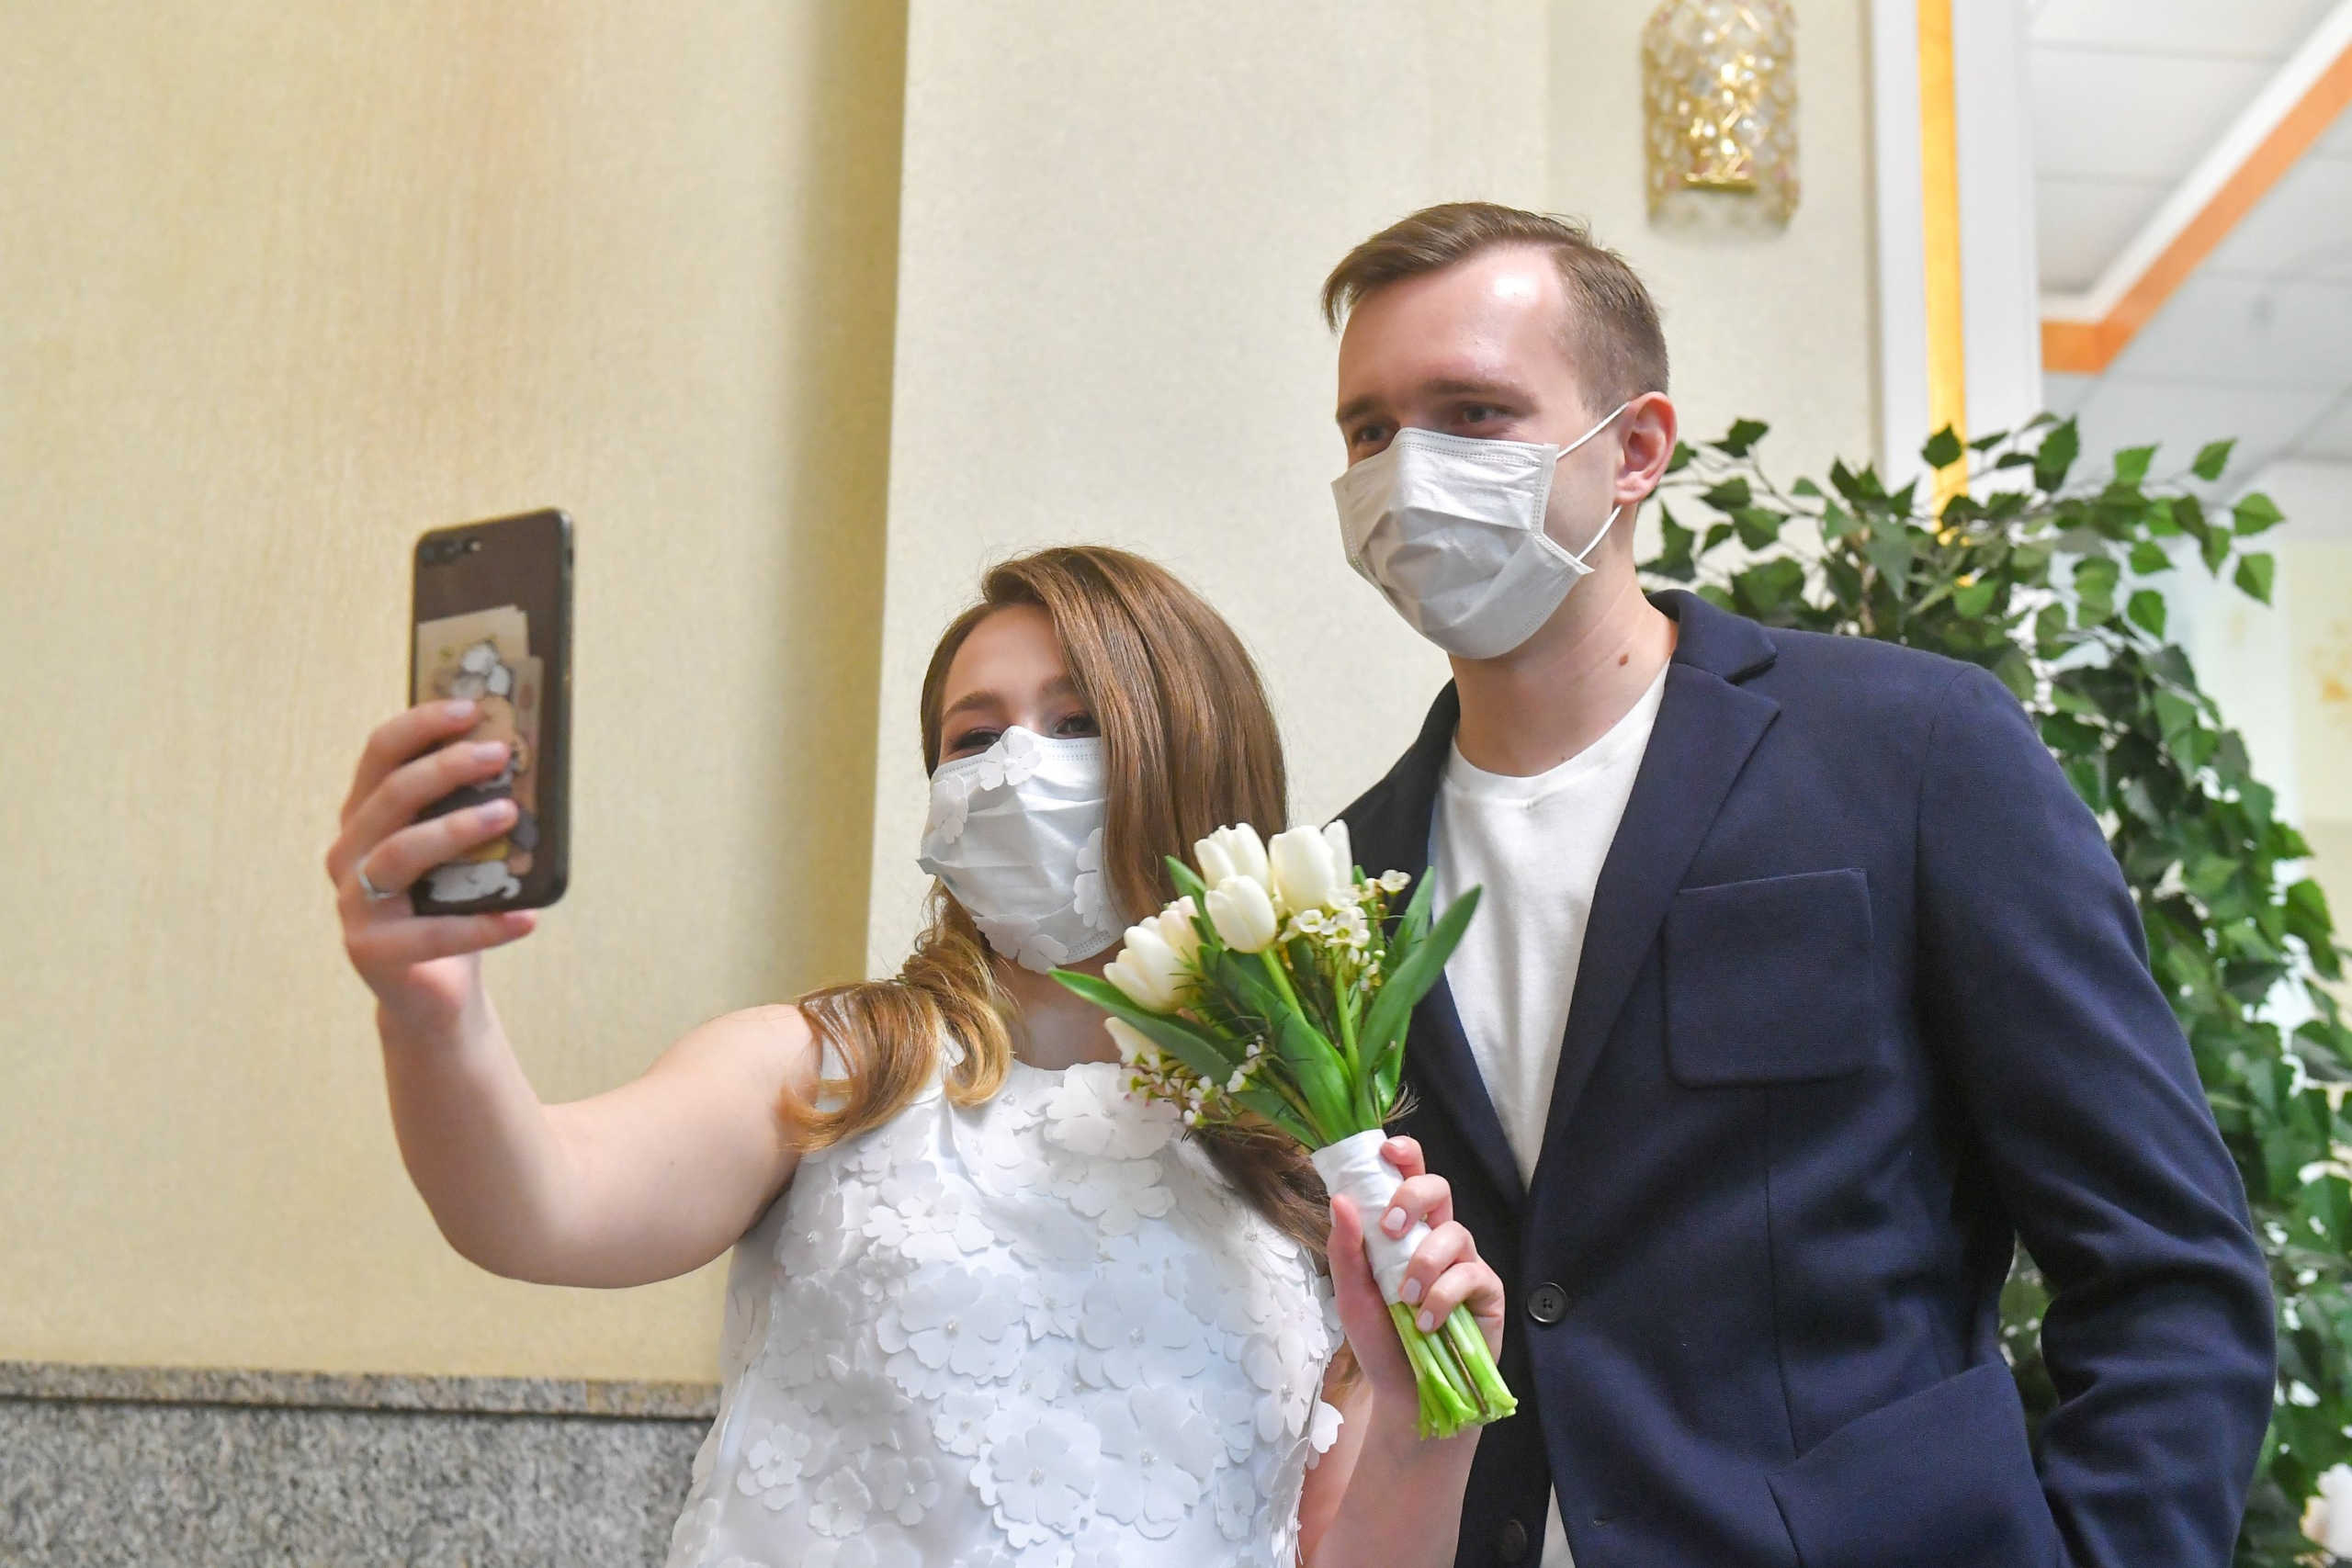 Κορονοϊός: Ξανά γάμοι στην Σλοβενία αλλά μόνο με δύο μάρτυρες